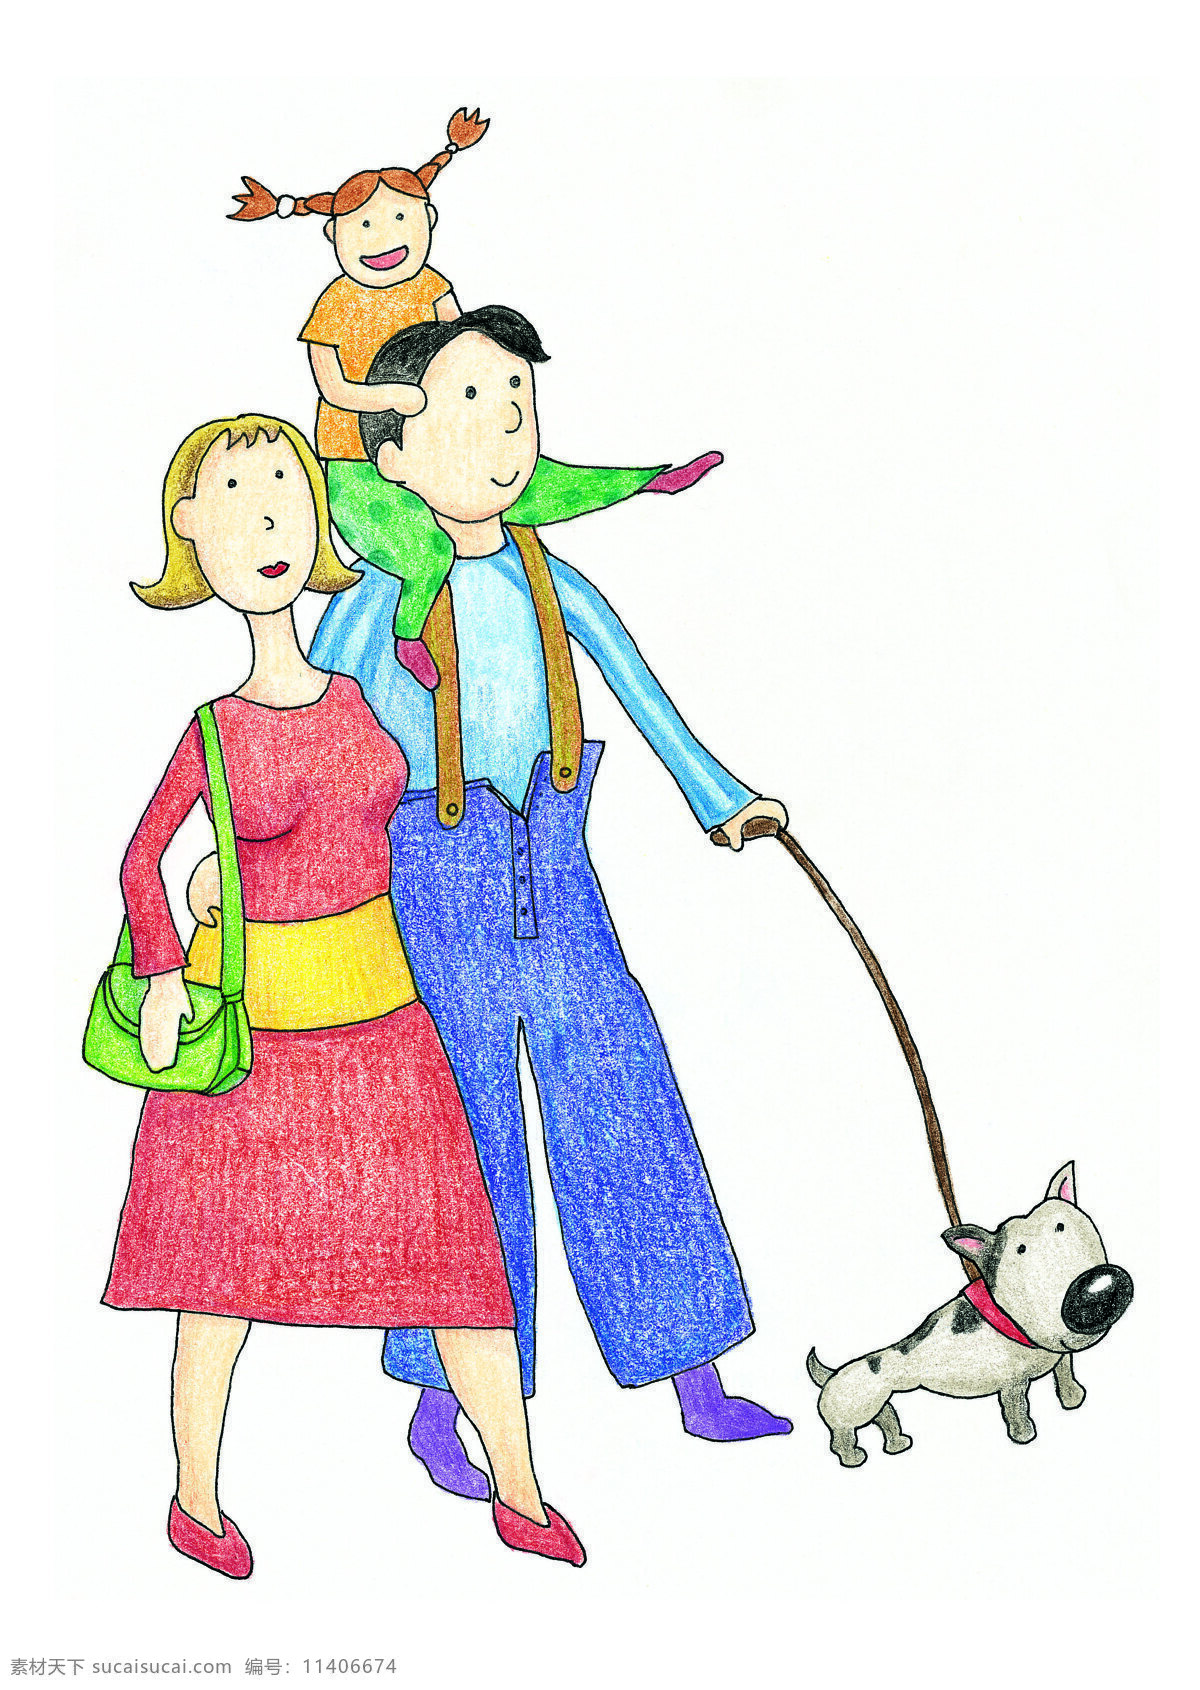 欢乐一家亲 一家人 遛狗 三口之家 卡通 漫画 手绘 彩铅 动漫动画 动漫人物